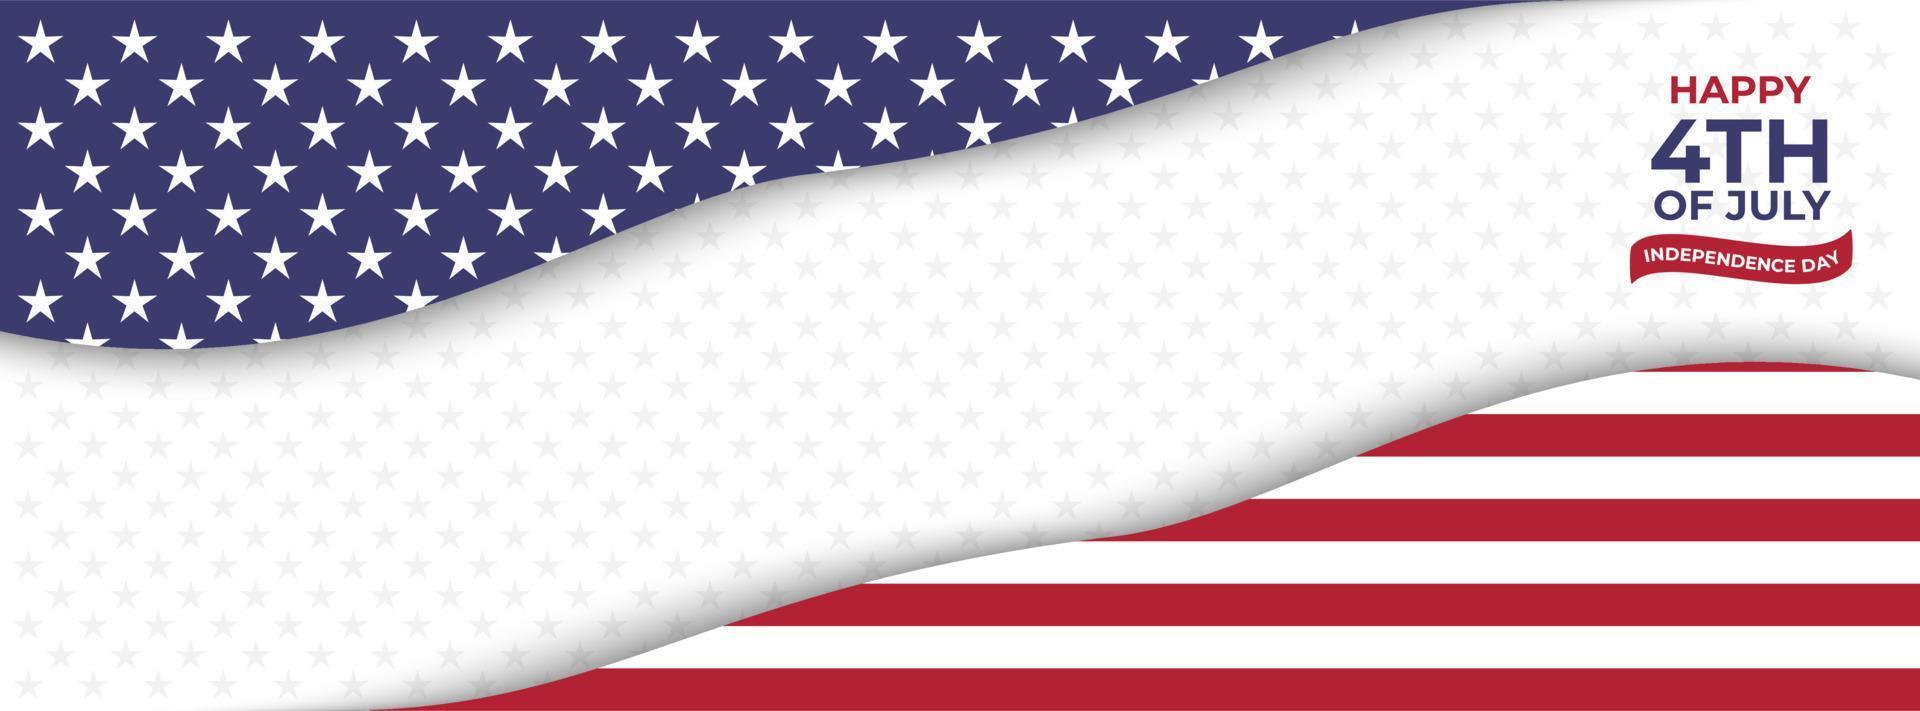 Landschaftshintergrundvorlage für Banner zum Unabhängigkeitstag der Vereinigten Staaten vektor